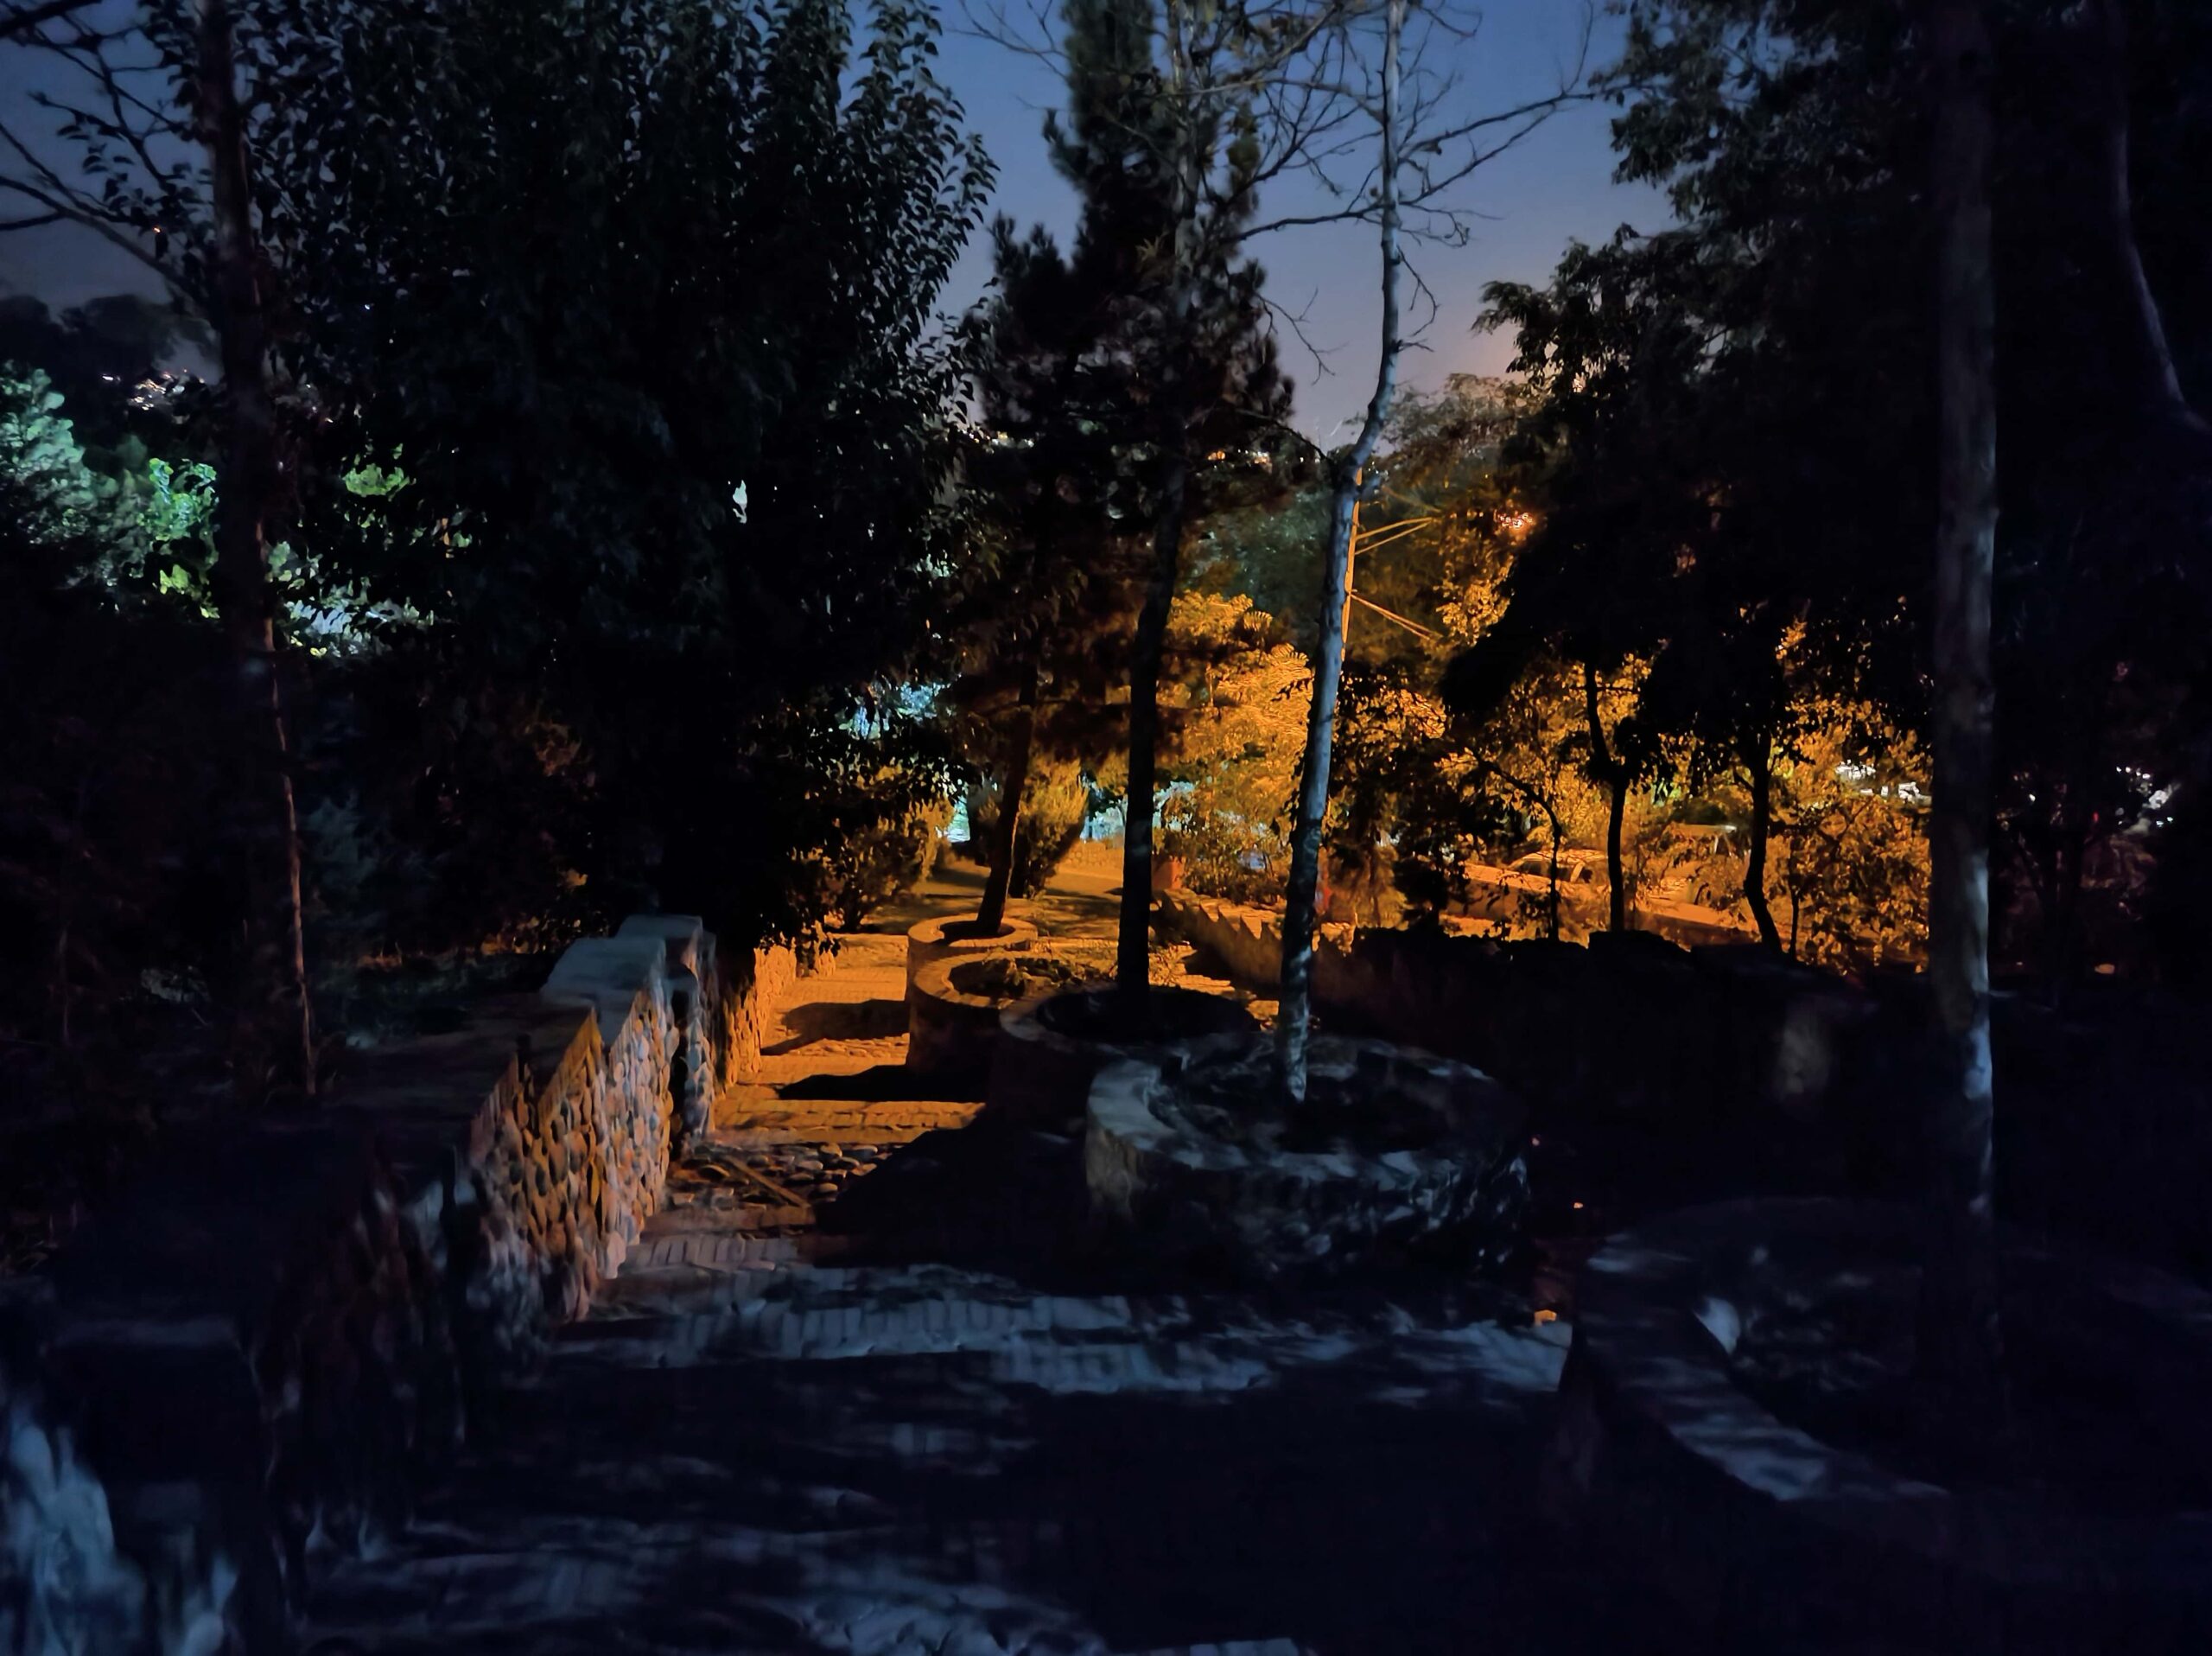 عکاسی در شب با دوربین اصلی گوشی پوکو X4 GT در حالت Night Mode روشن